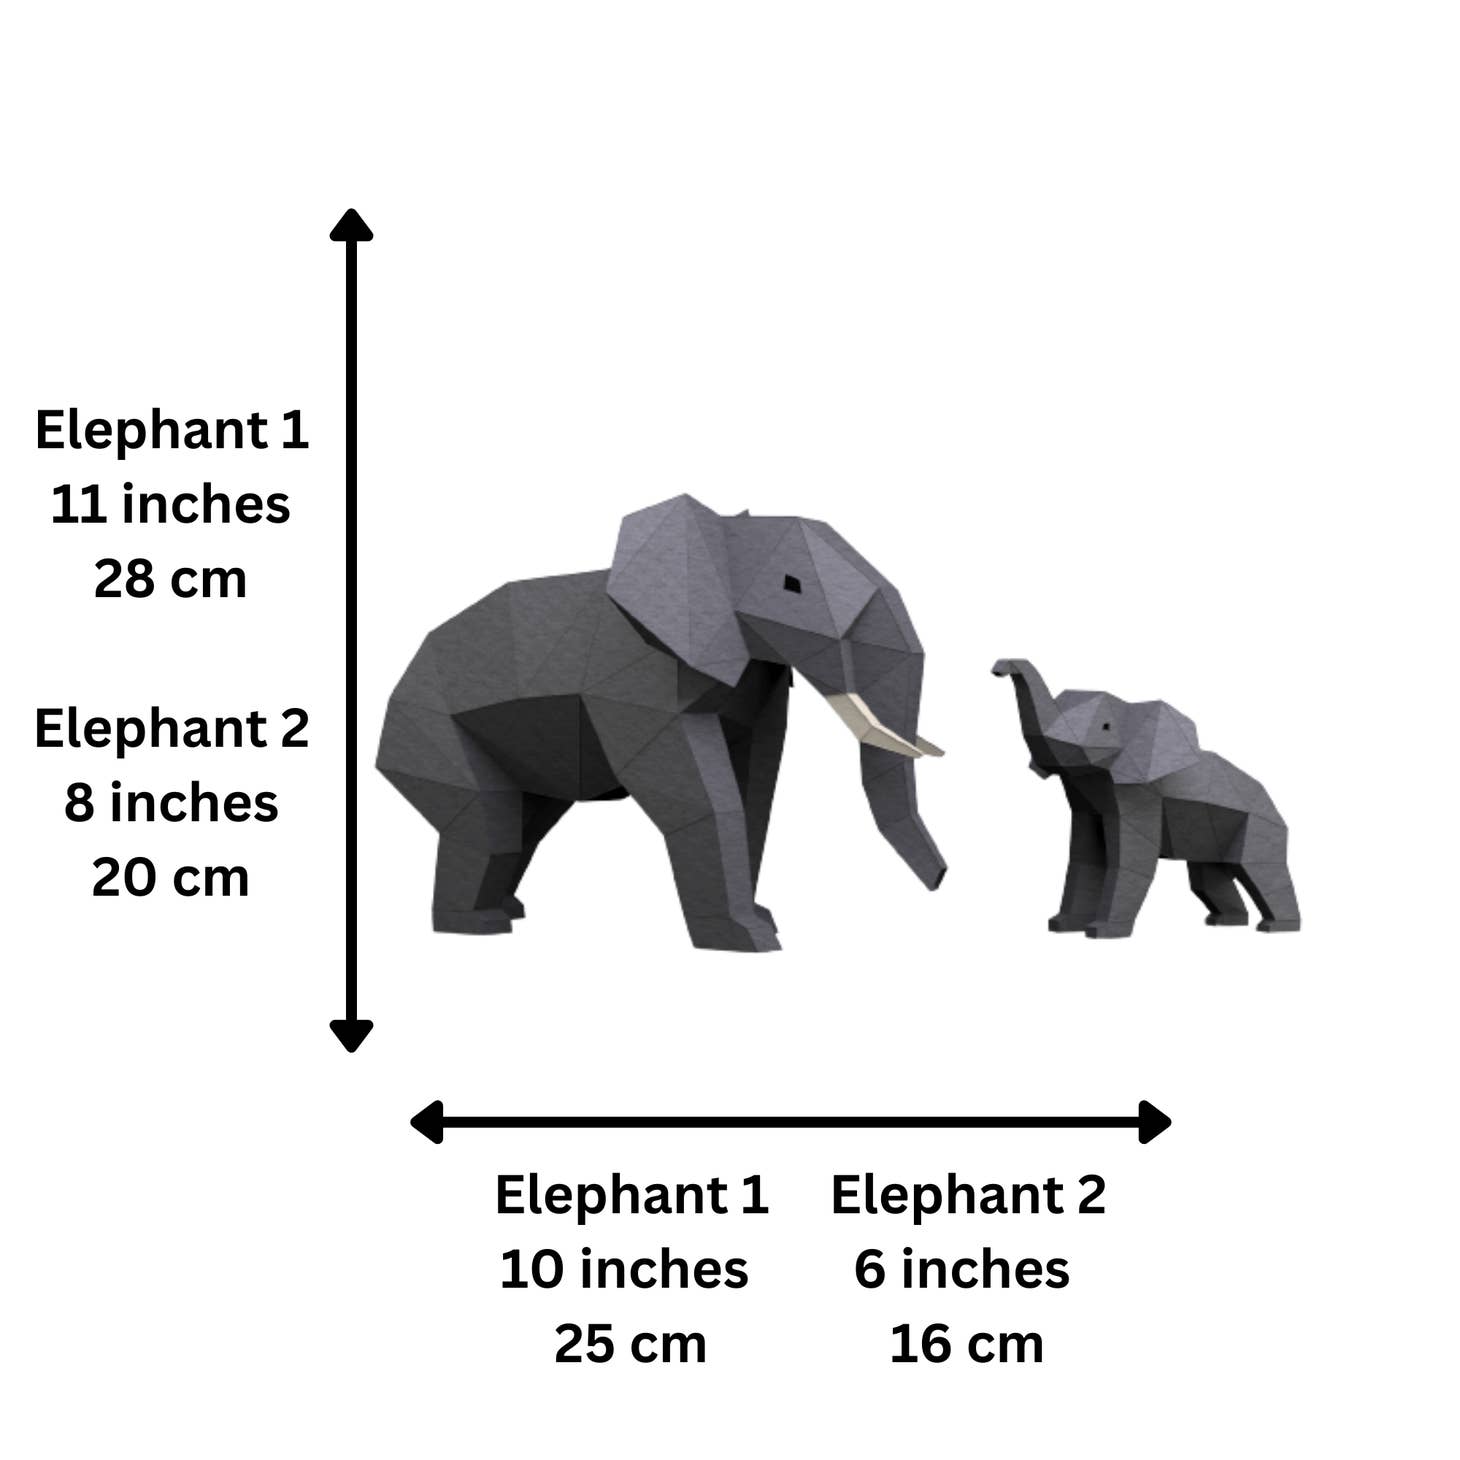 ELETGR Elephants Origami Model Papercraft Kit